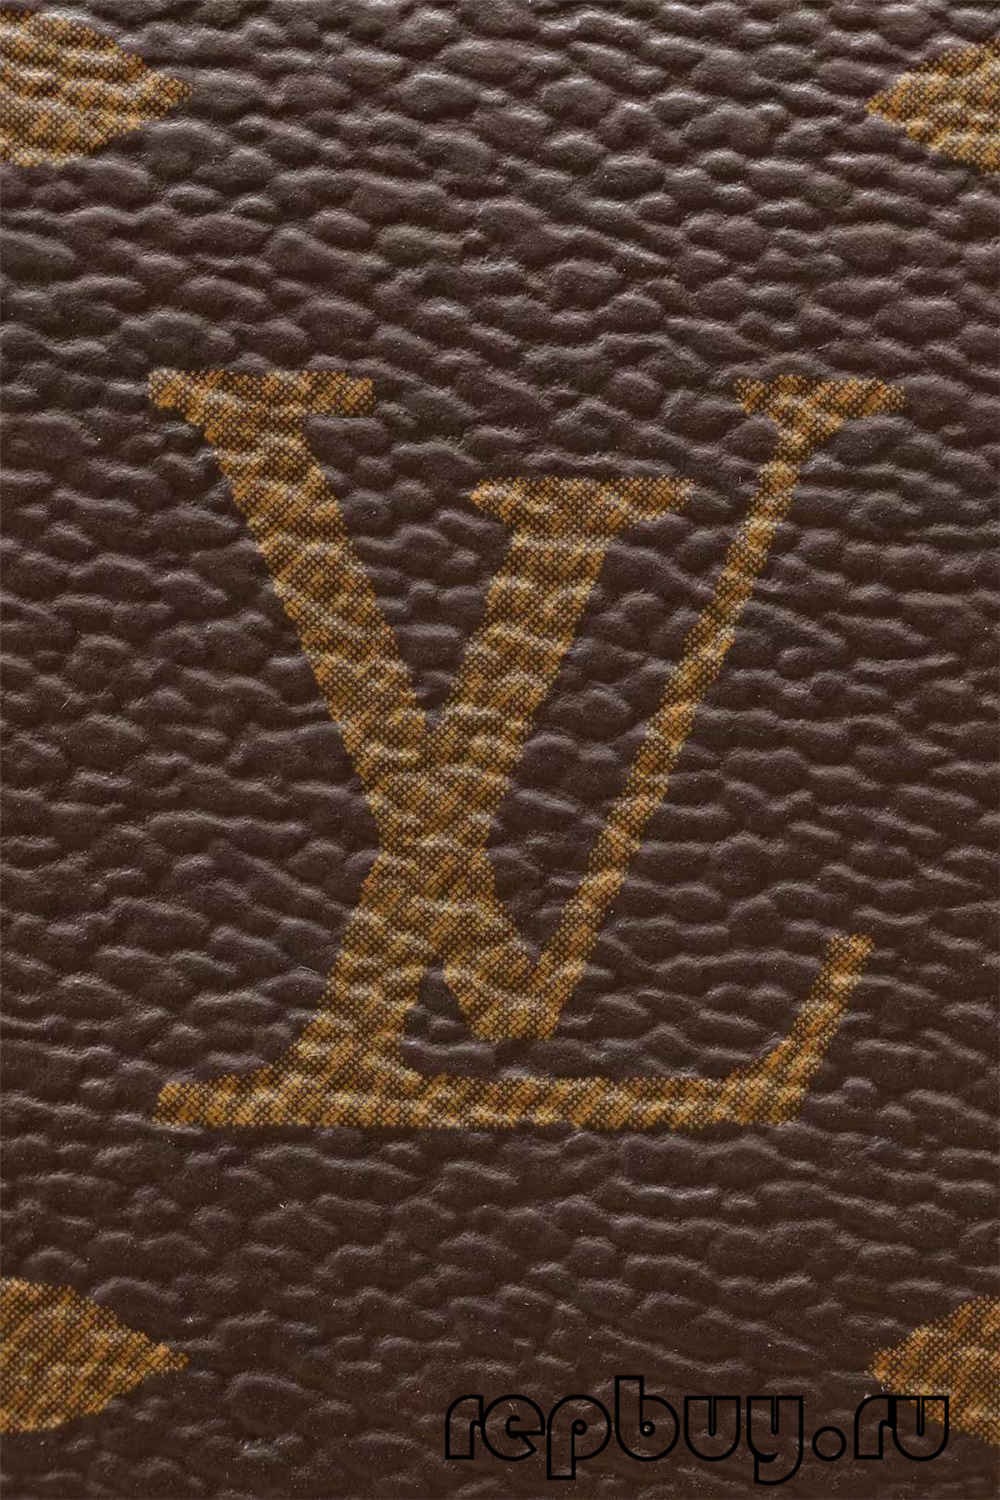 Yakanakisa mhando Louis Vuitton Speedy 25 bhegi replica online kutenga (2022 yakagadziridzwa)-Yakanakisa Hunhu Fake Louis Vuitton Bag Online Store, Replica dhizaini bag ru